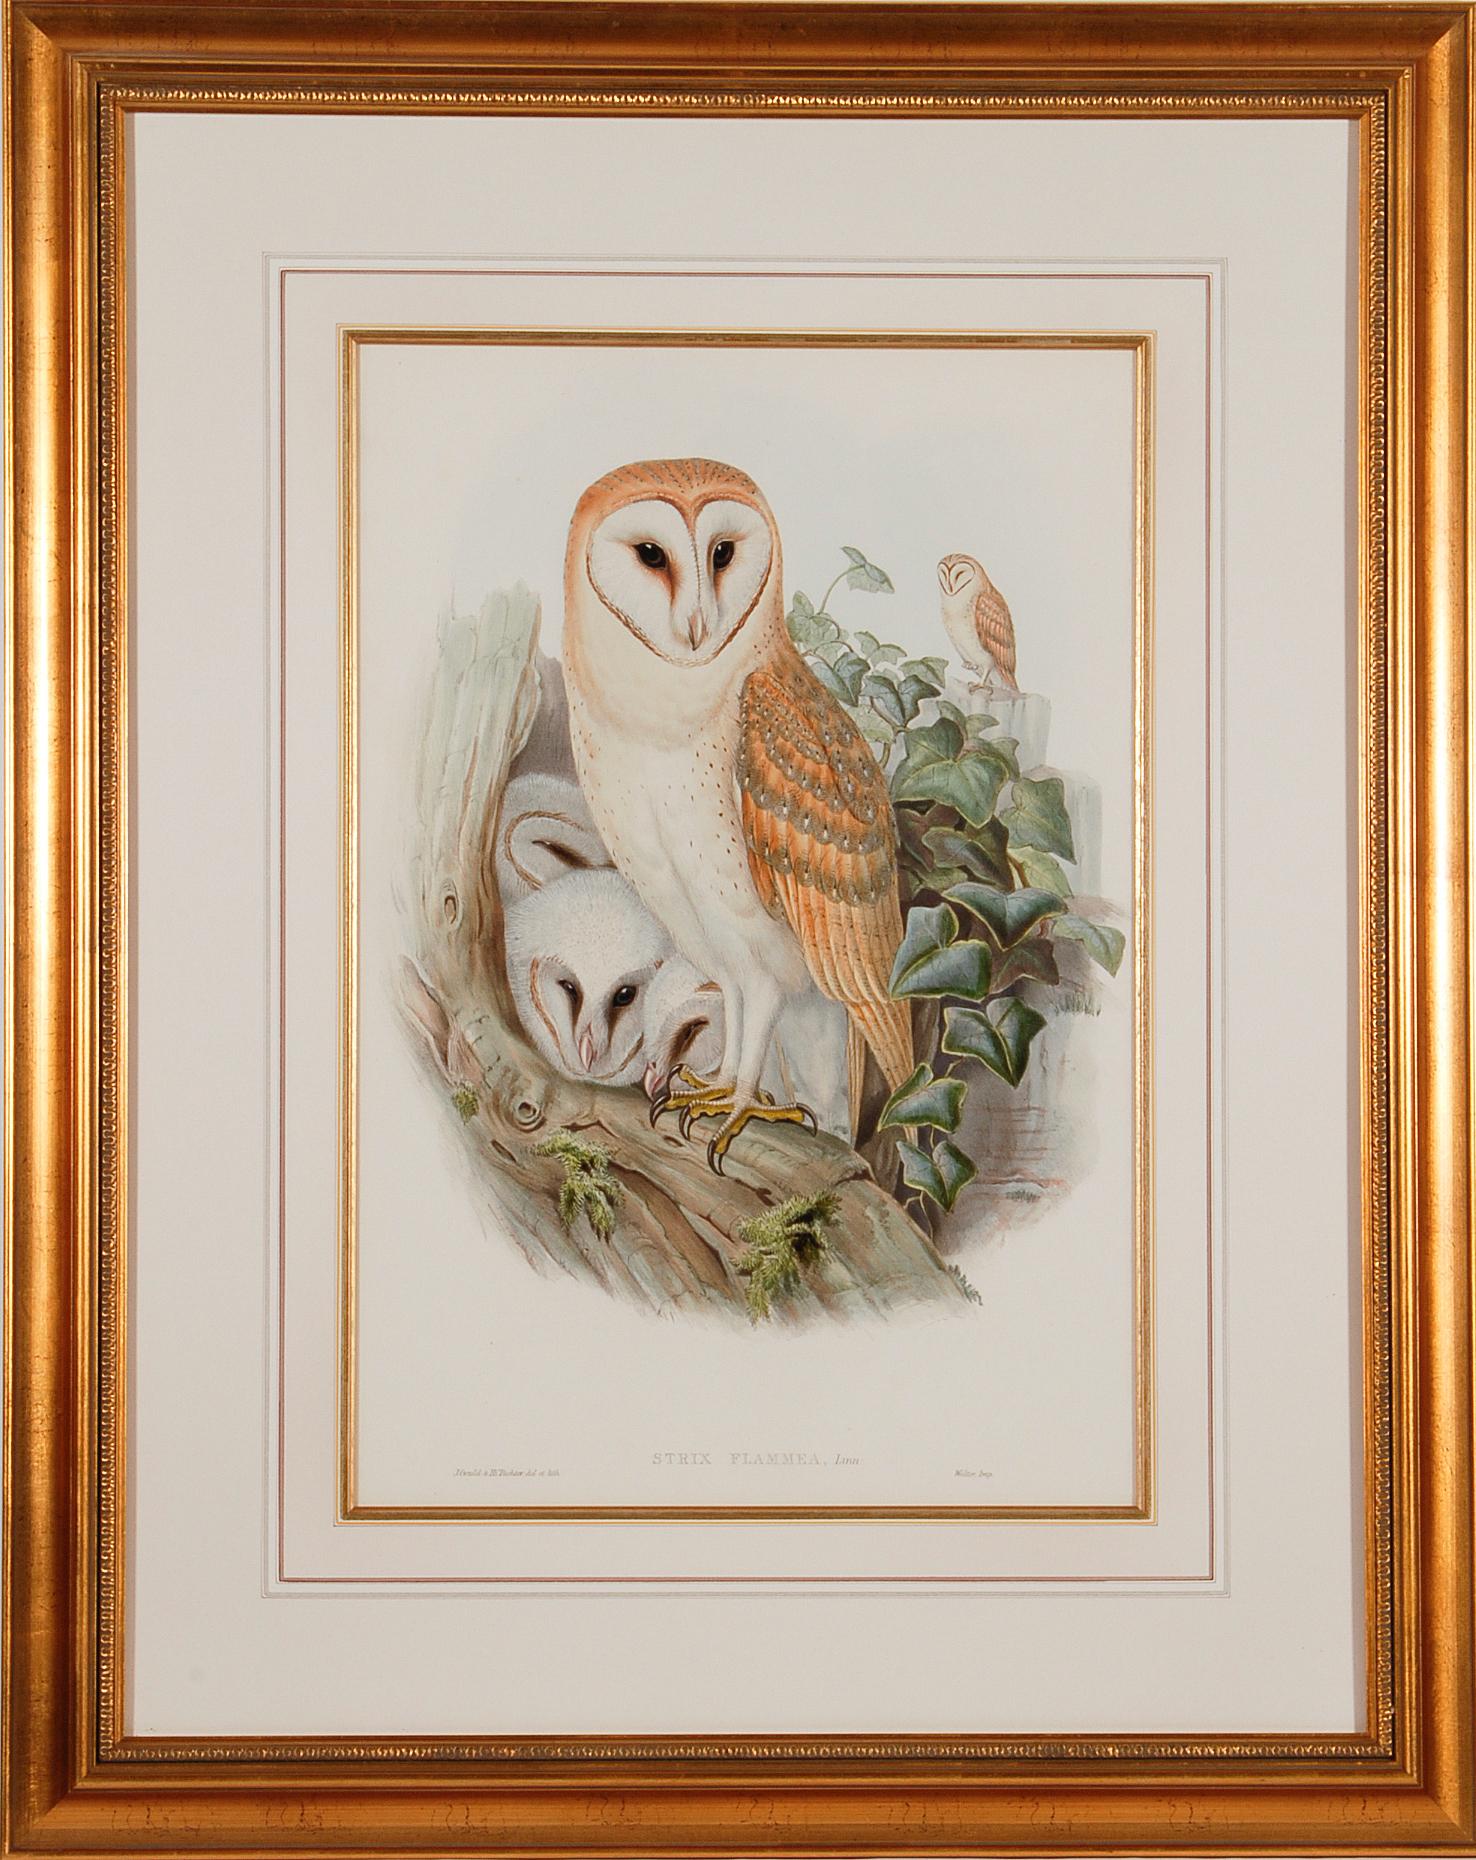 Barn Owl Family: Eine gerahmte Original-Lithographie des 19. Jahrhunderts von Gould